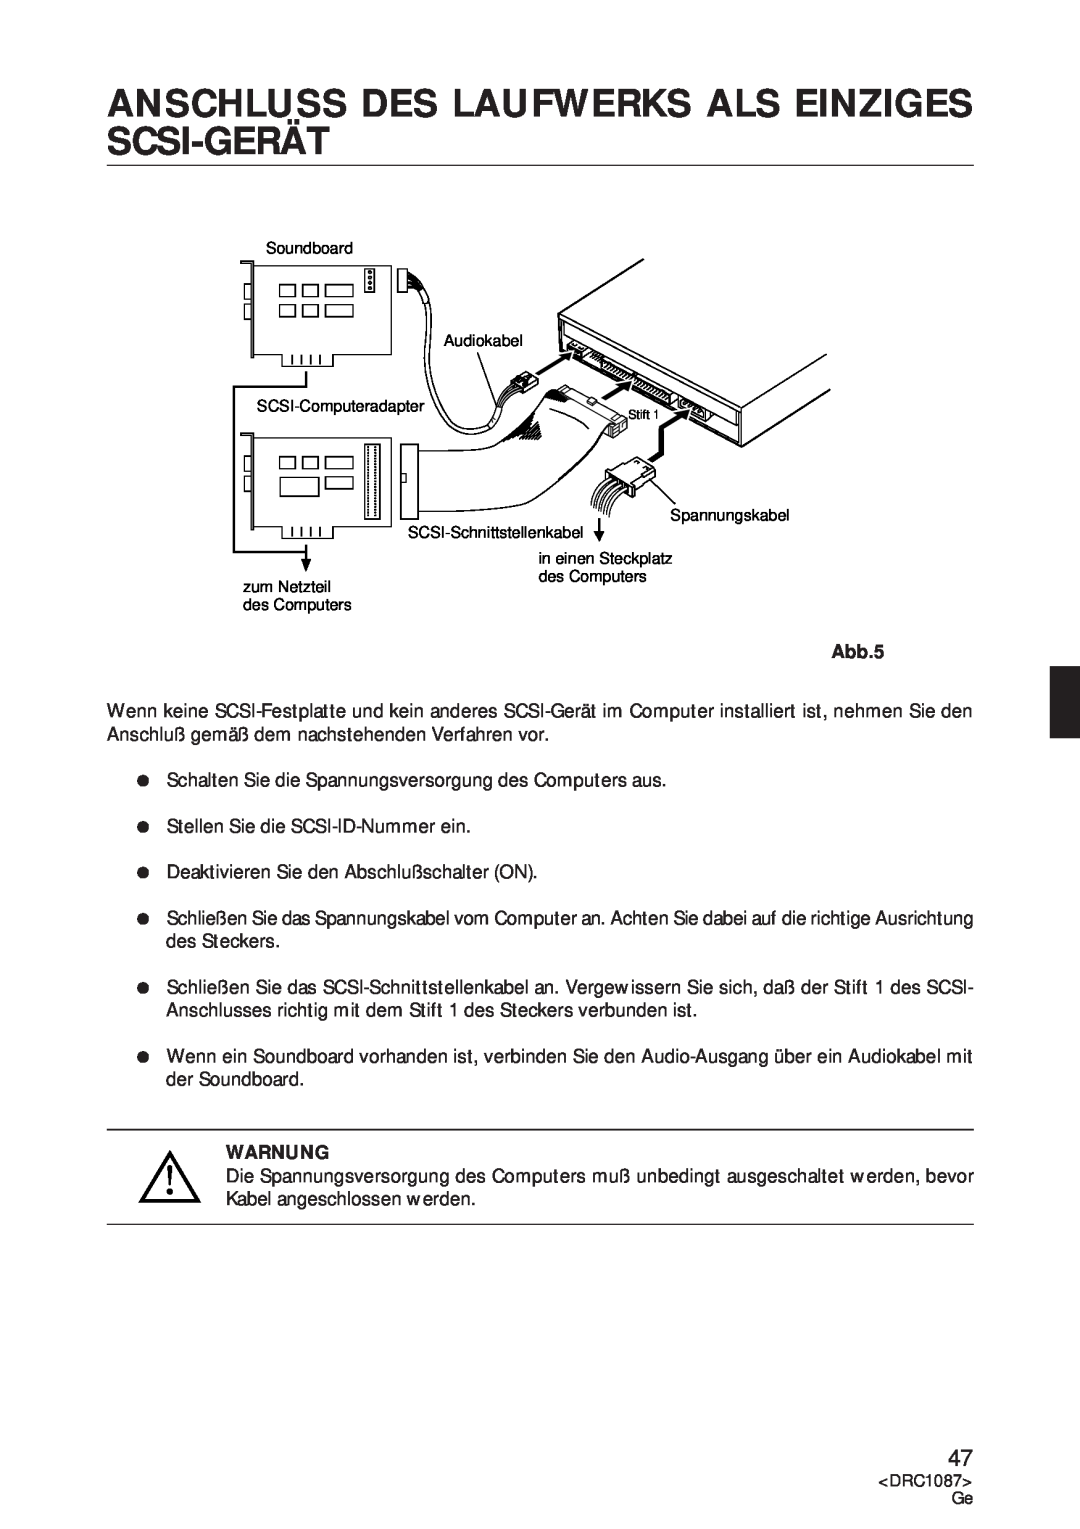 Pioneer DR-U16S user service Anschluss Des Laufwerks Als Einziges Scsi-Gerät, Abb.5, Warnung 